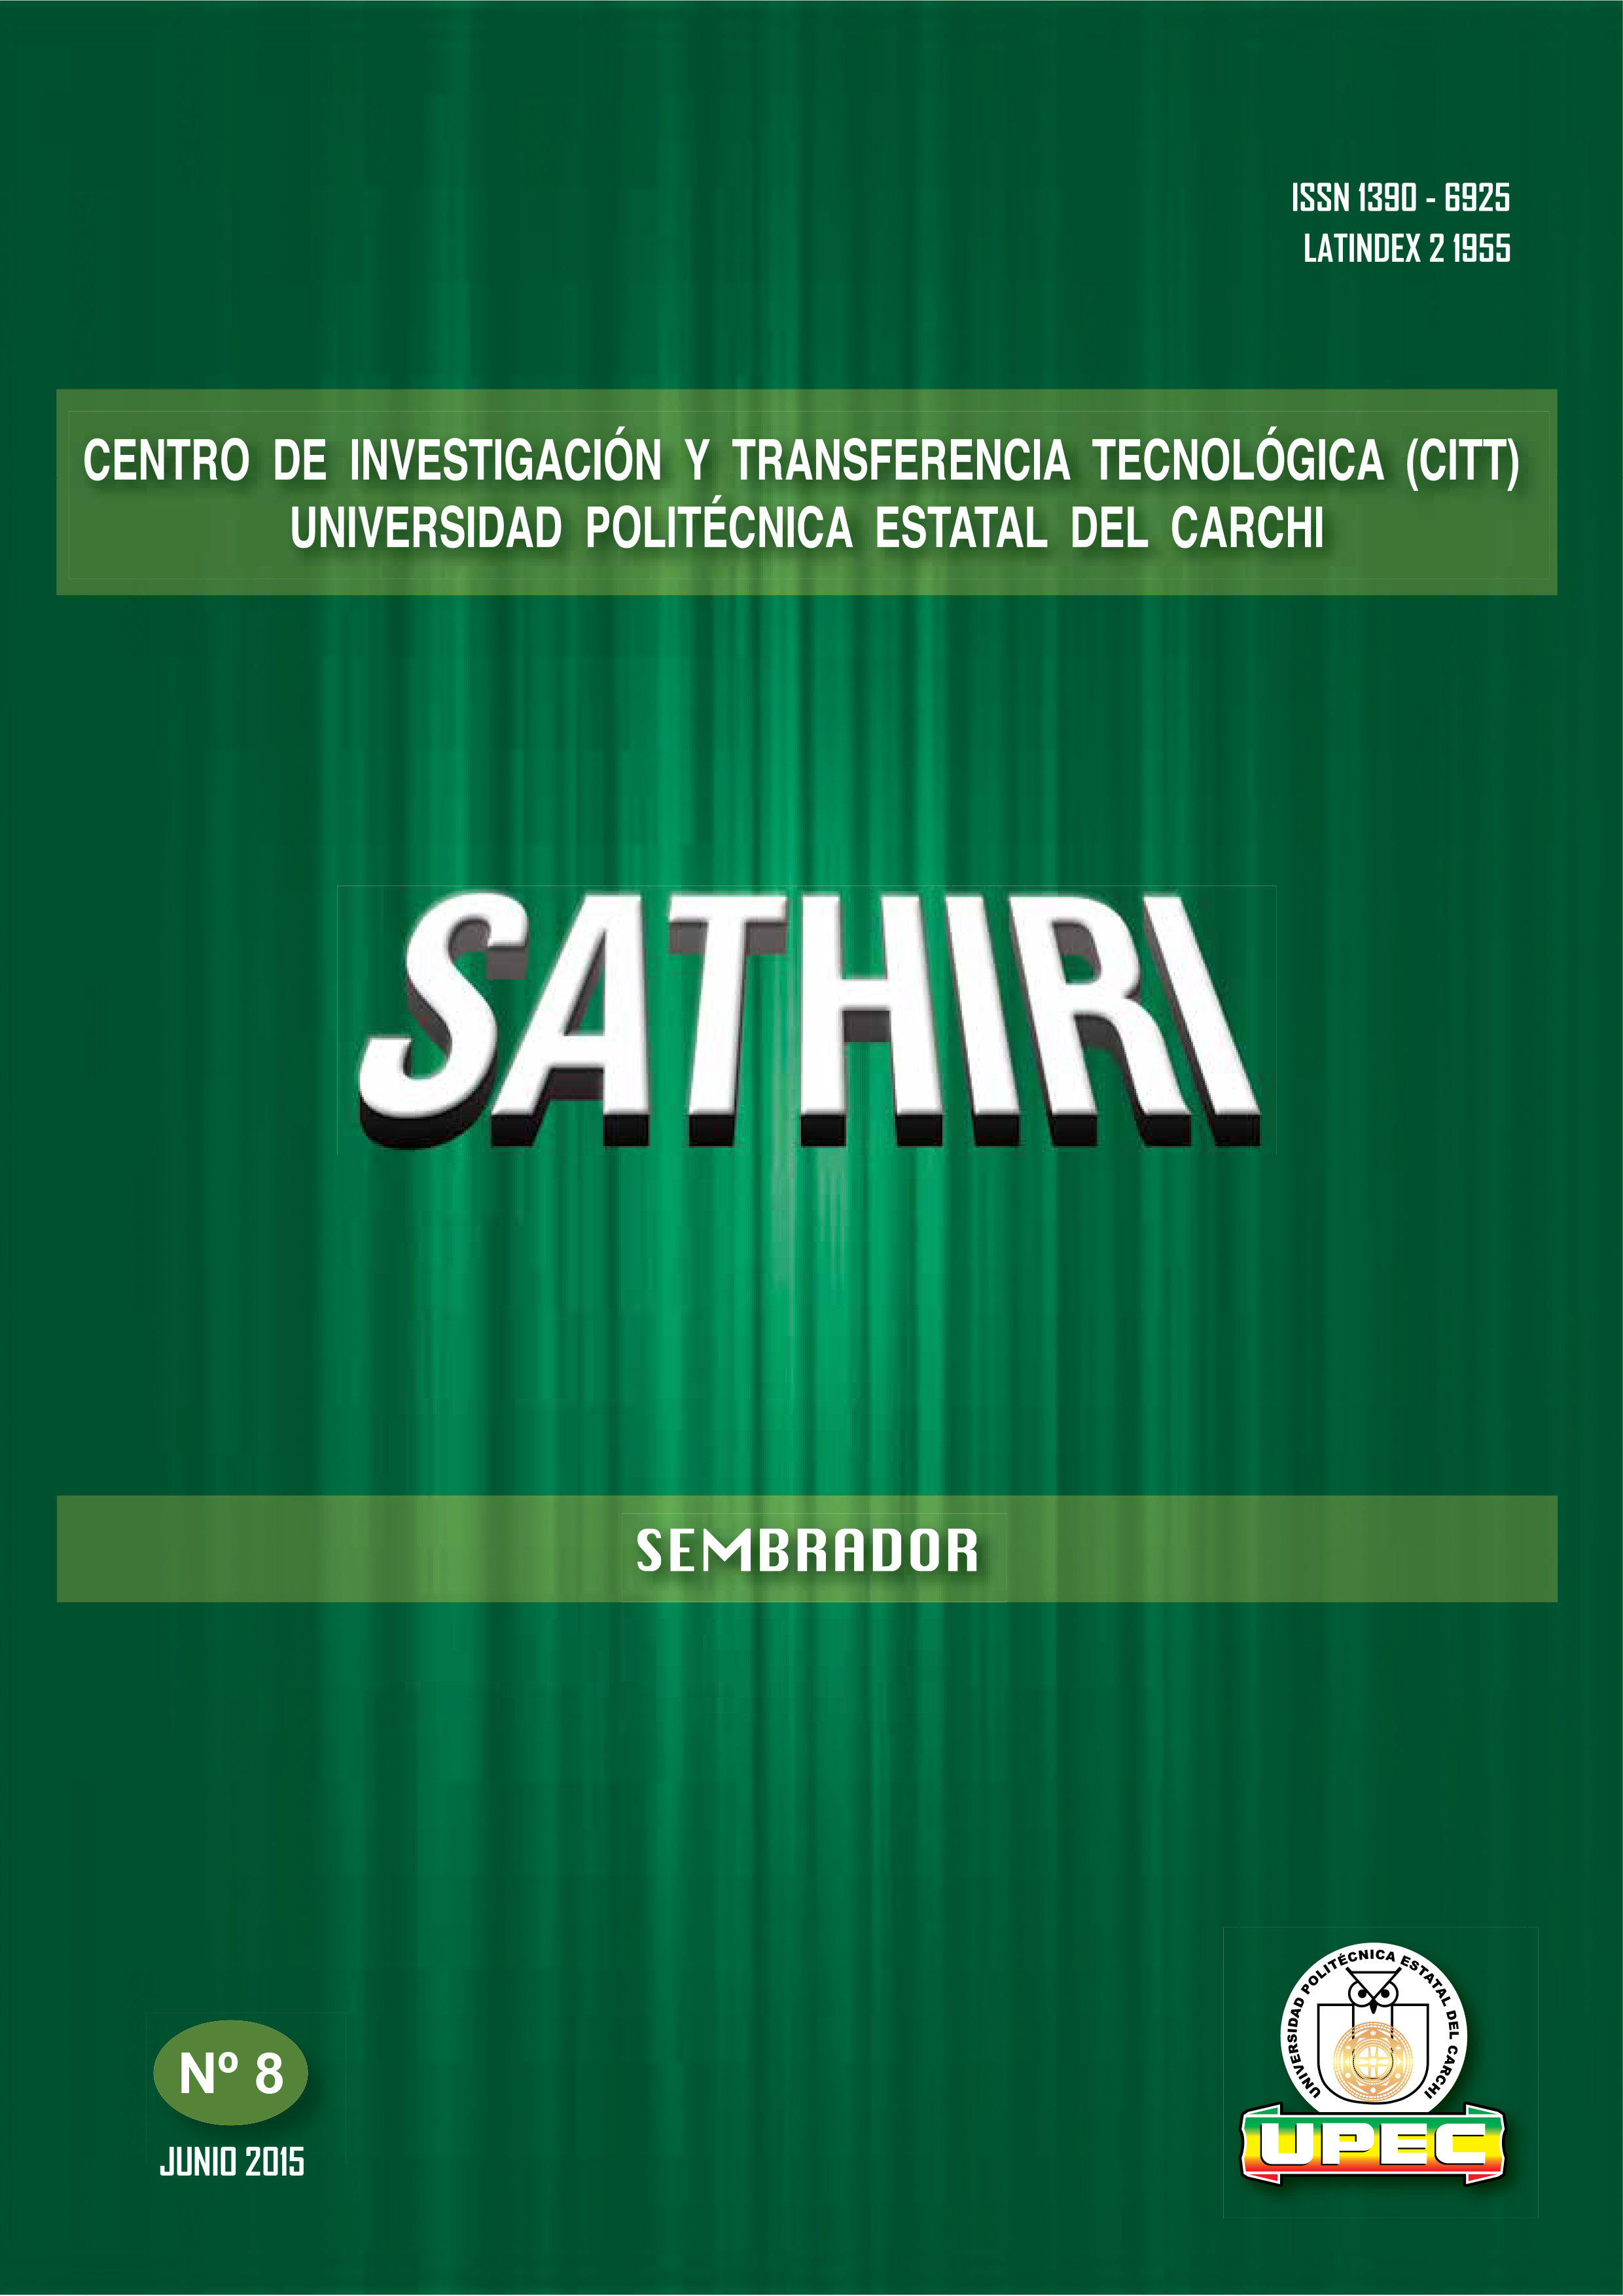 					Ver Núm. 8 (2015): Revista SATHIRI: Sembrador No. 8 (Enero - Junio)
				